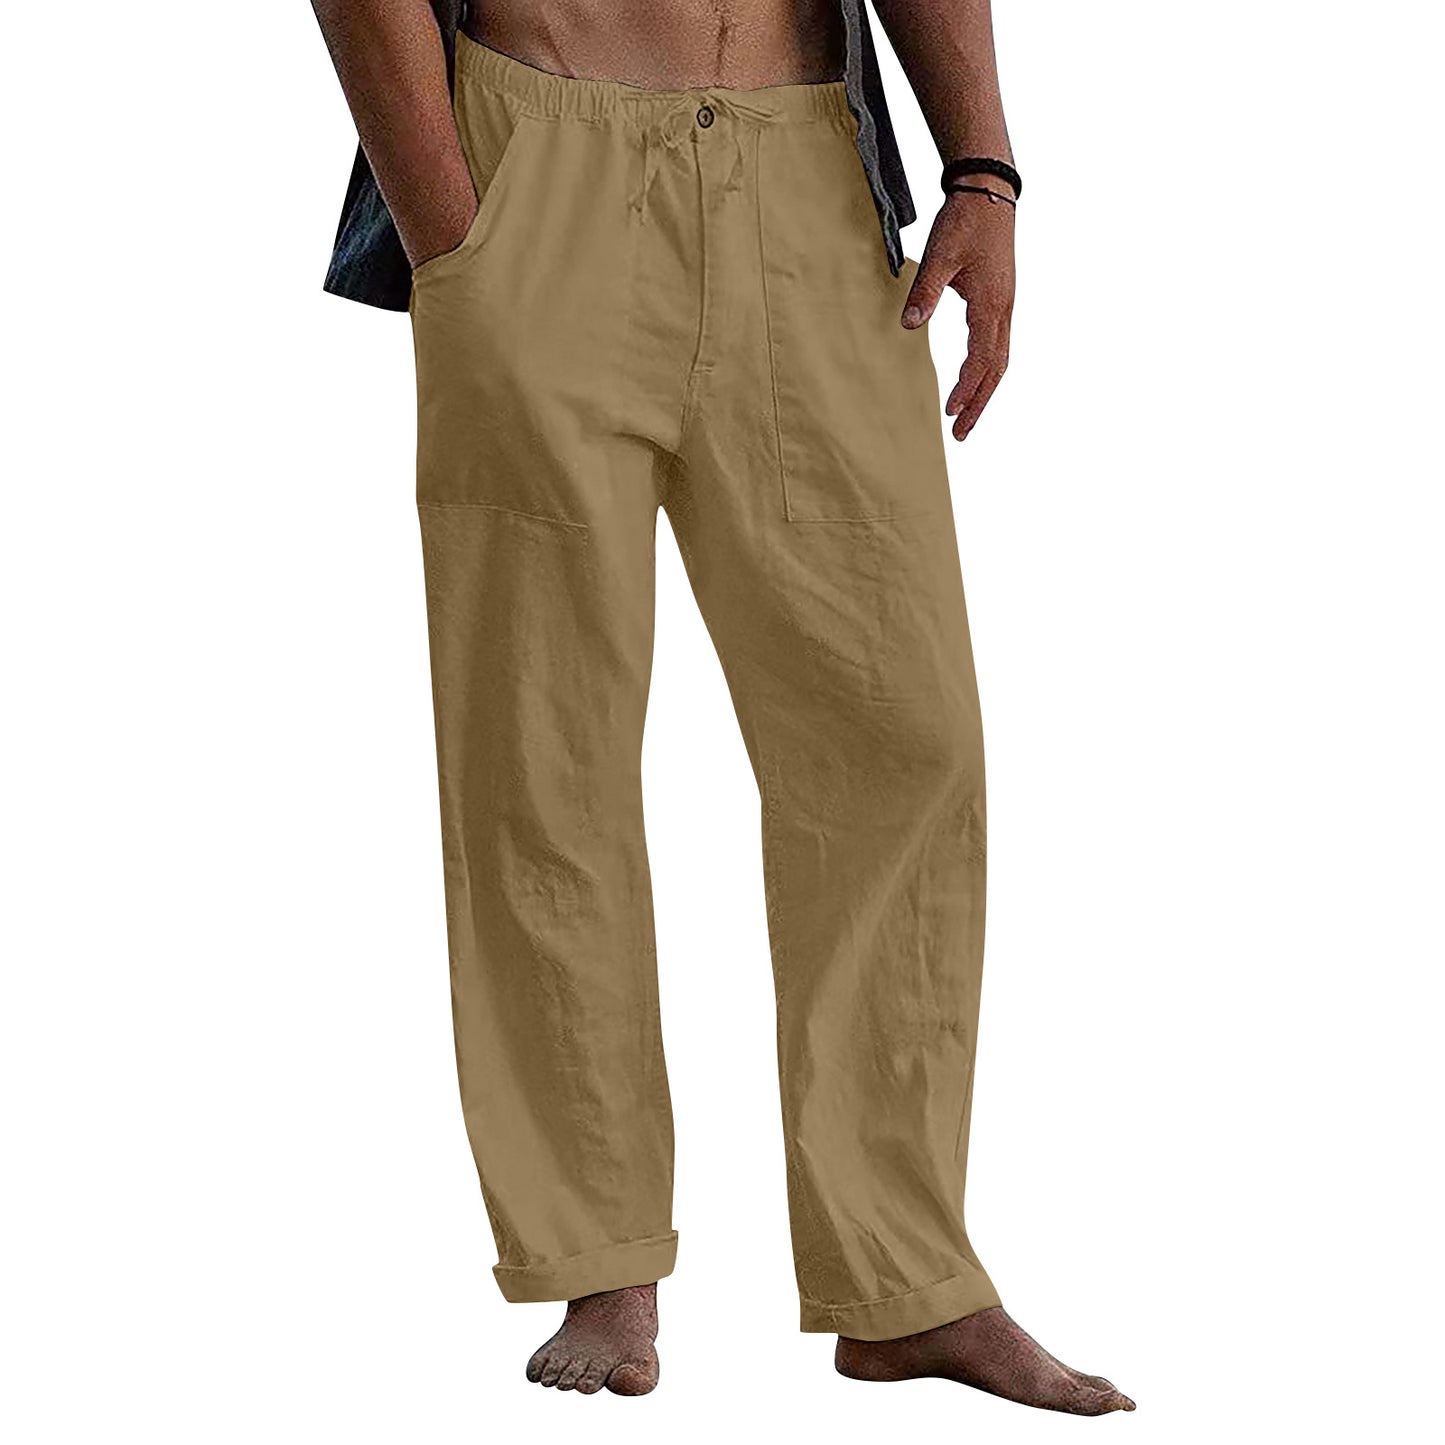 Casual Linen Men's Summer Beach Pants with Elastic Waist